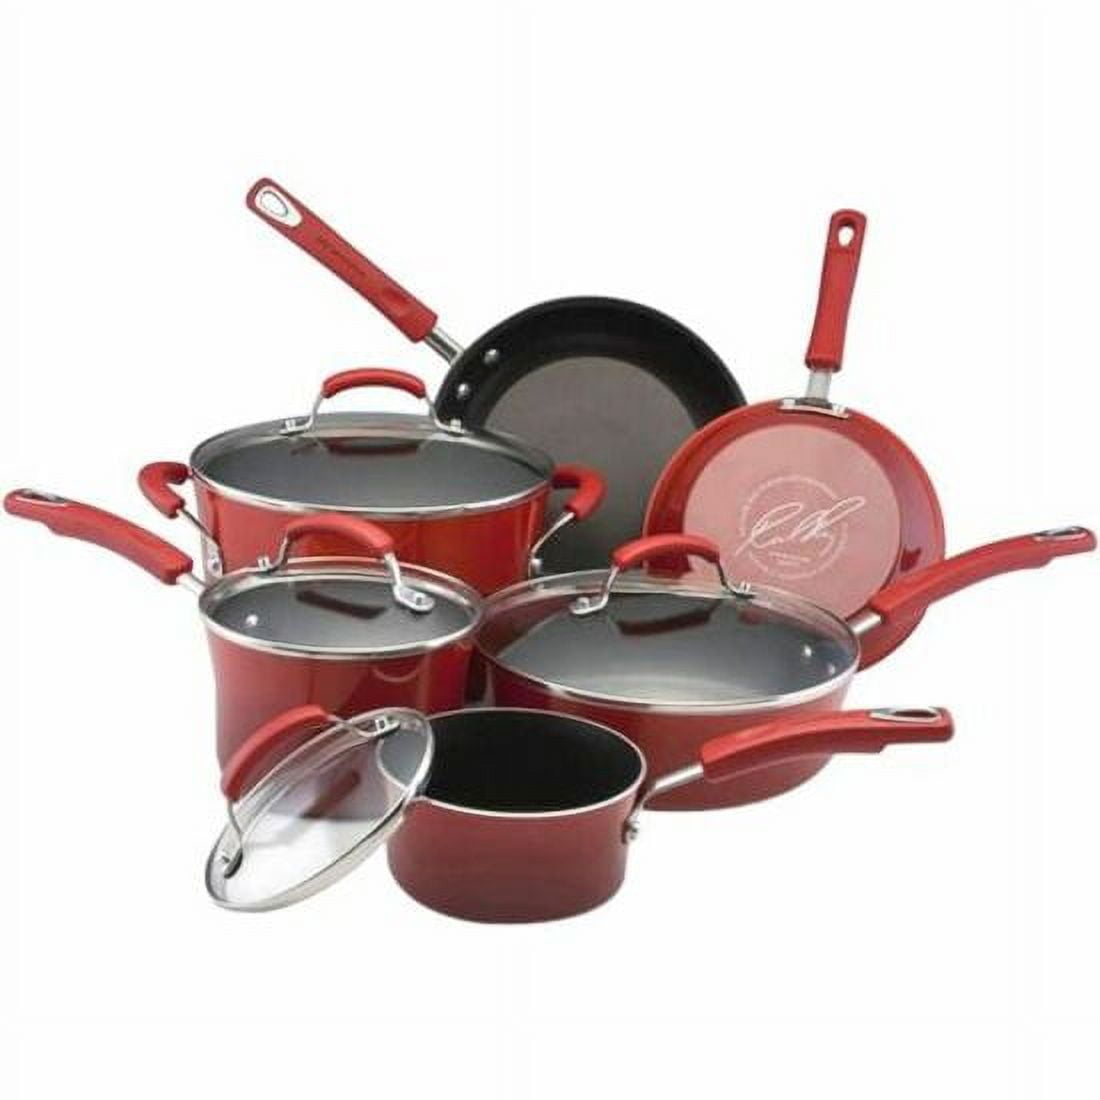 Купить красную посуду. Посуда для кухни. Набор кастрюль. Комплект кастрюль. Кухонная посуда красного цвета.